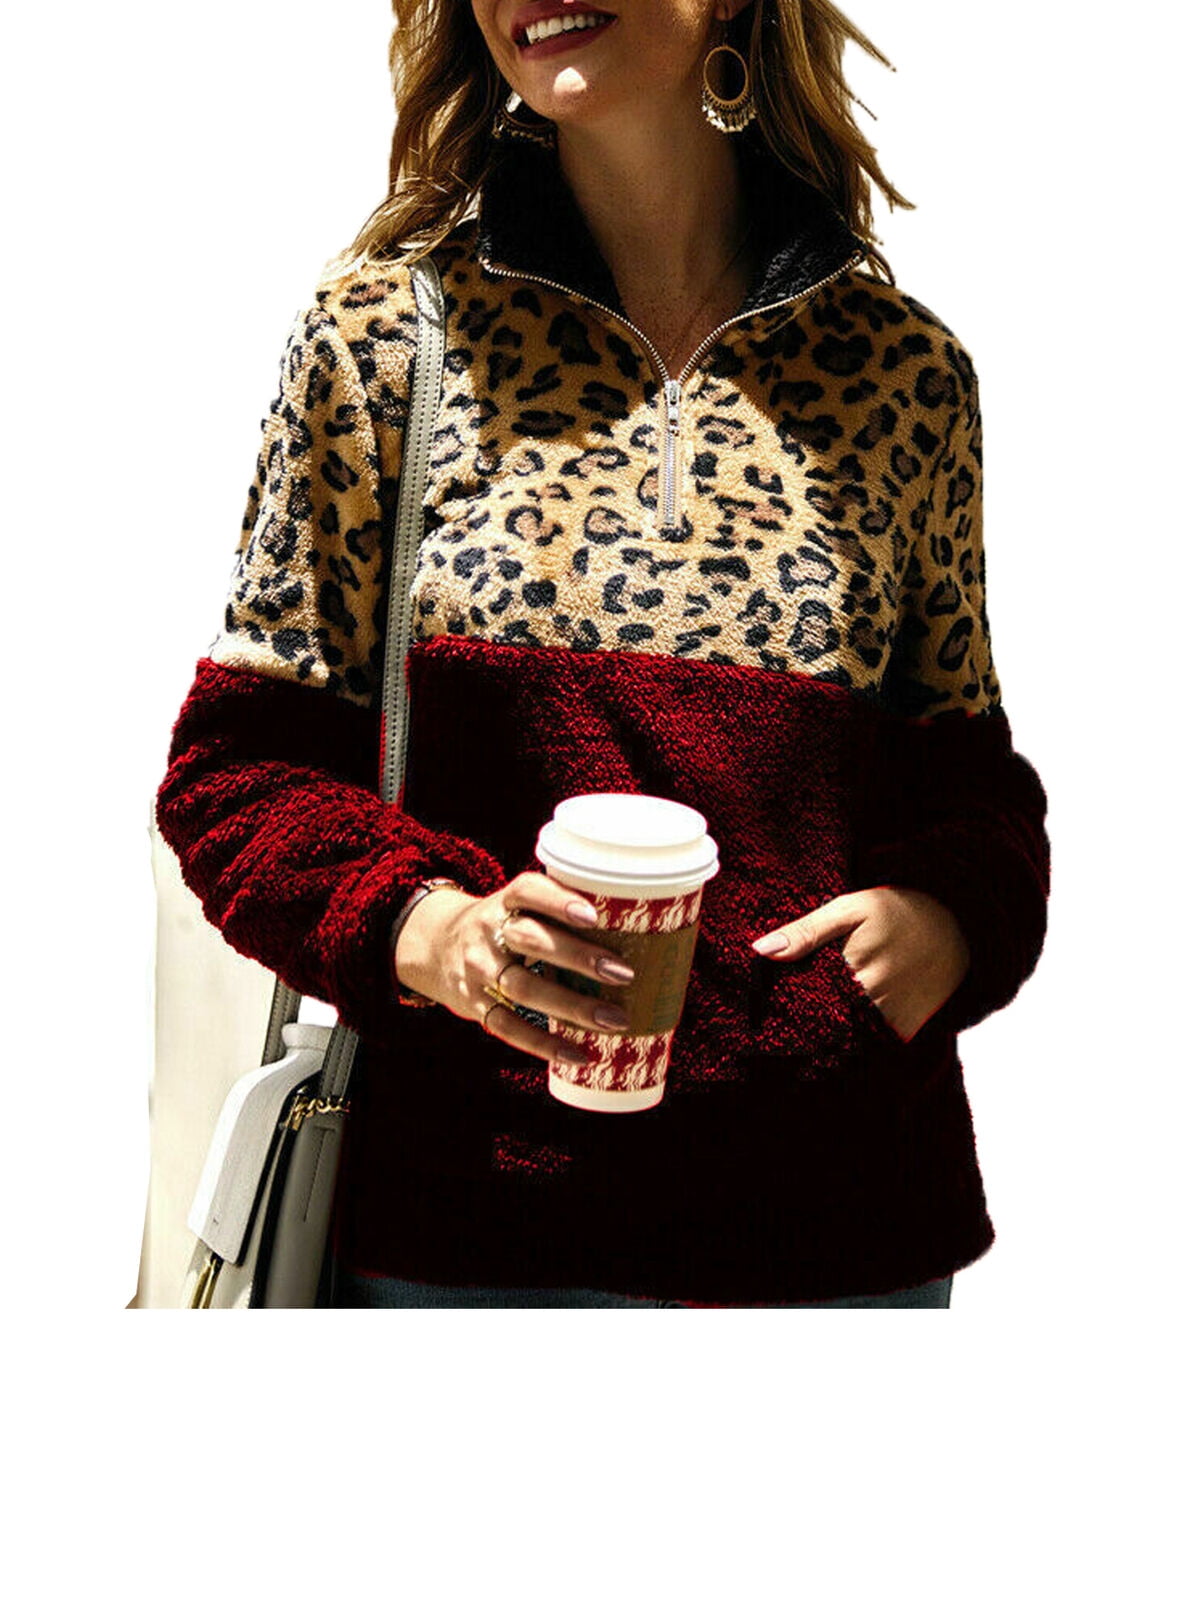 Leopard Jacket Women Sweater Top Warm Casual Winter Cardigan Long Sleeve Coat US